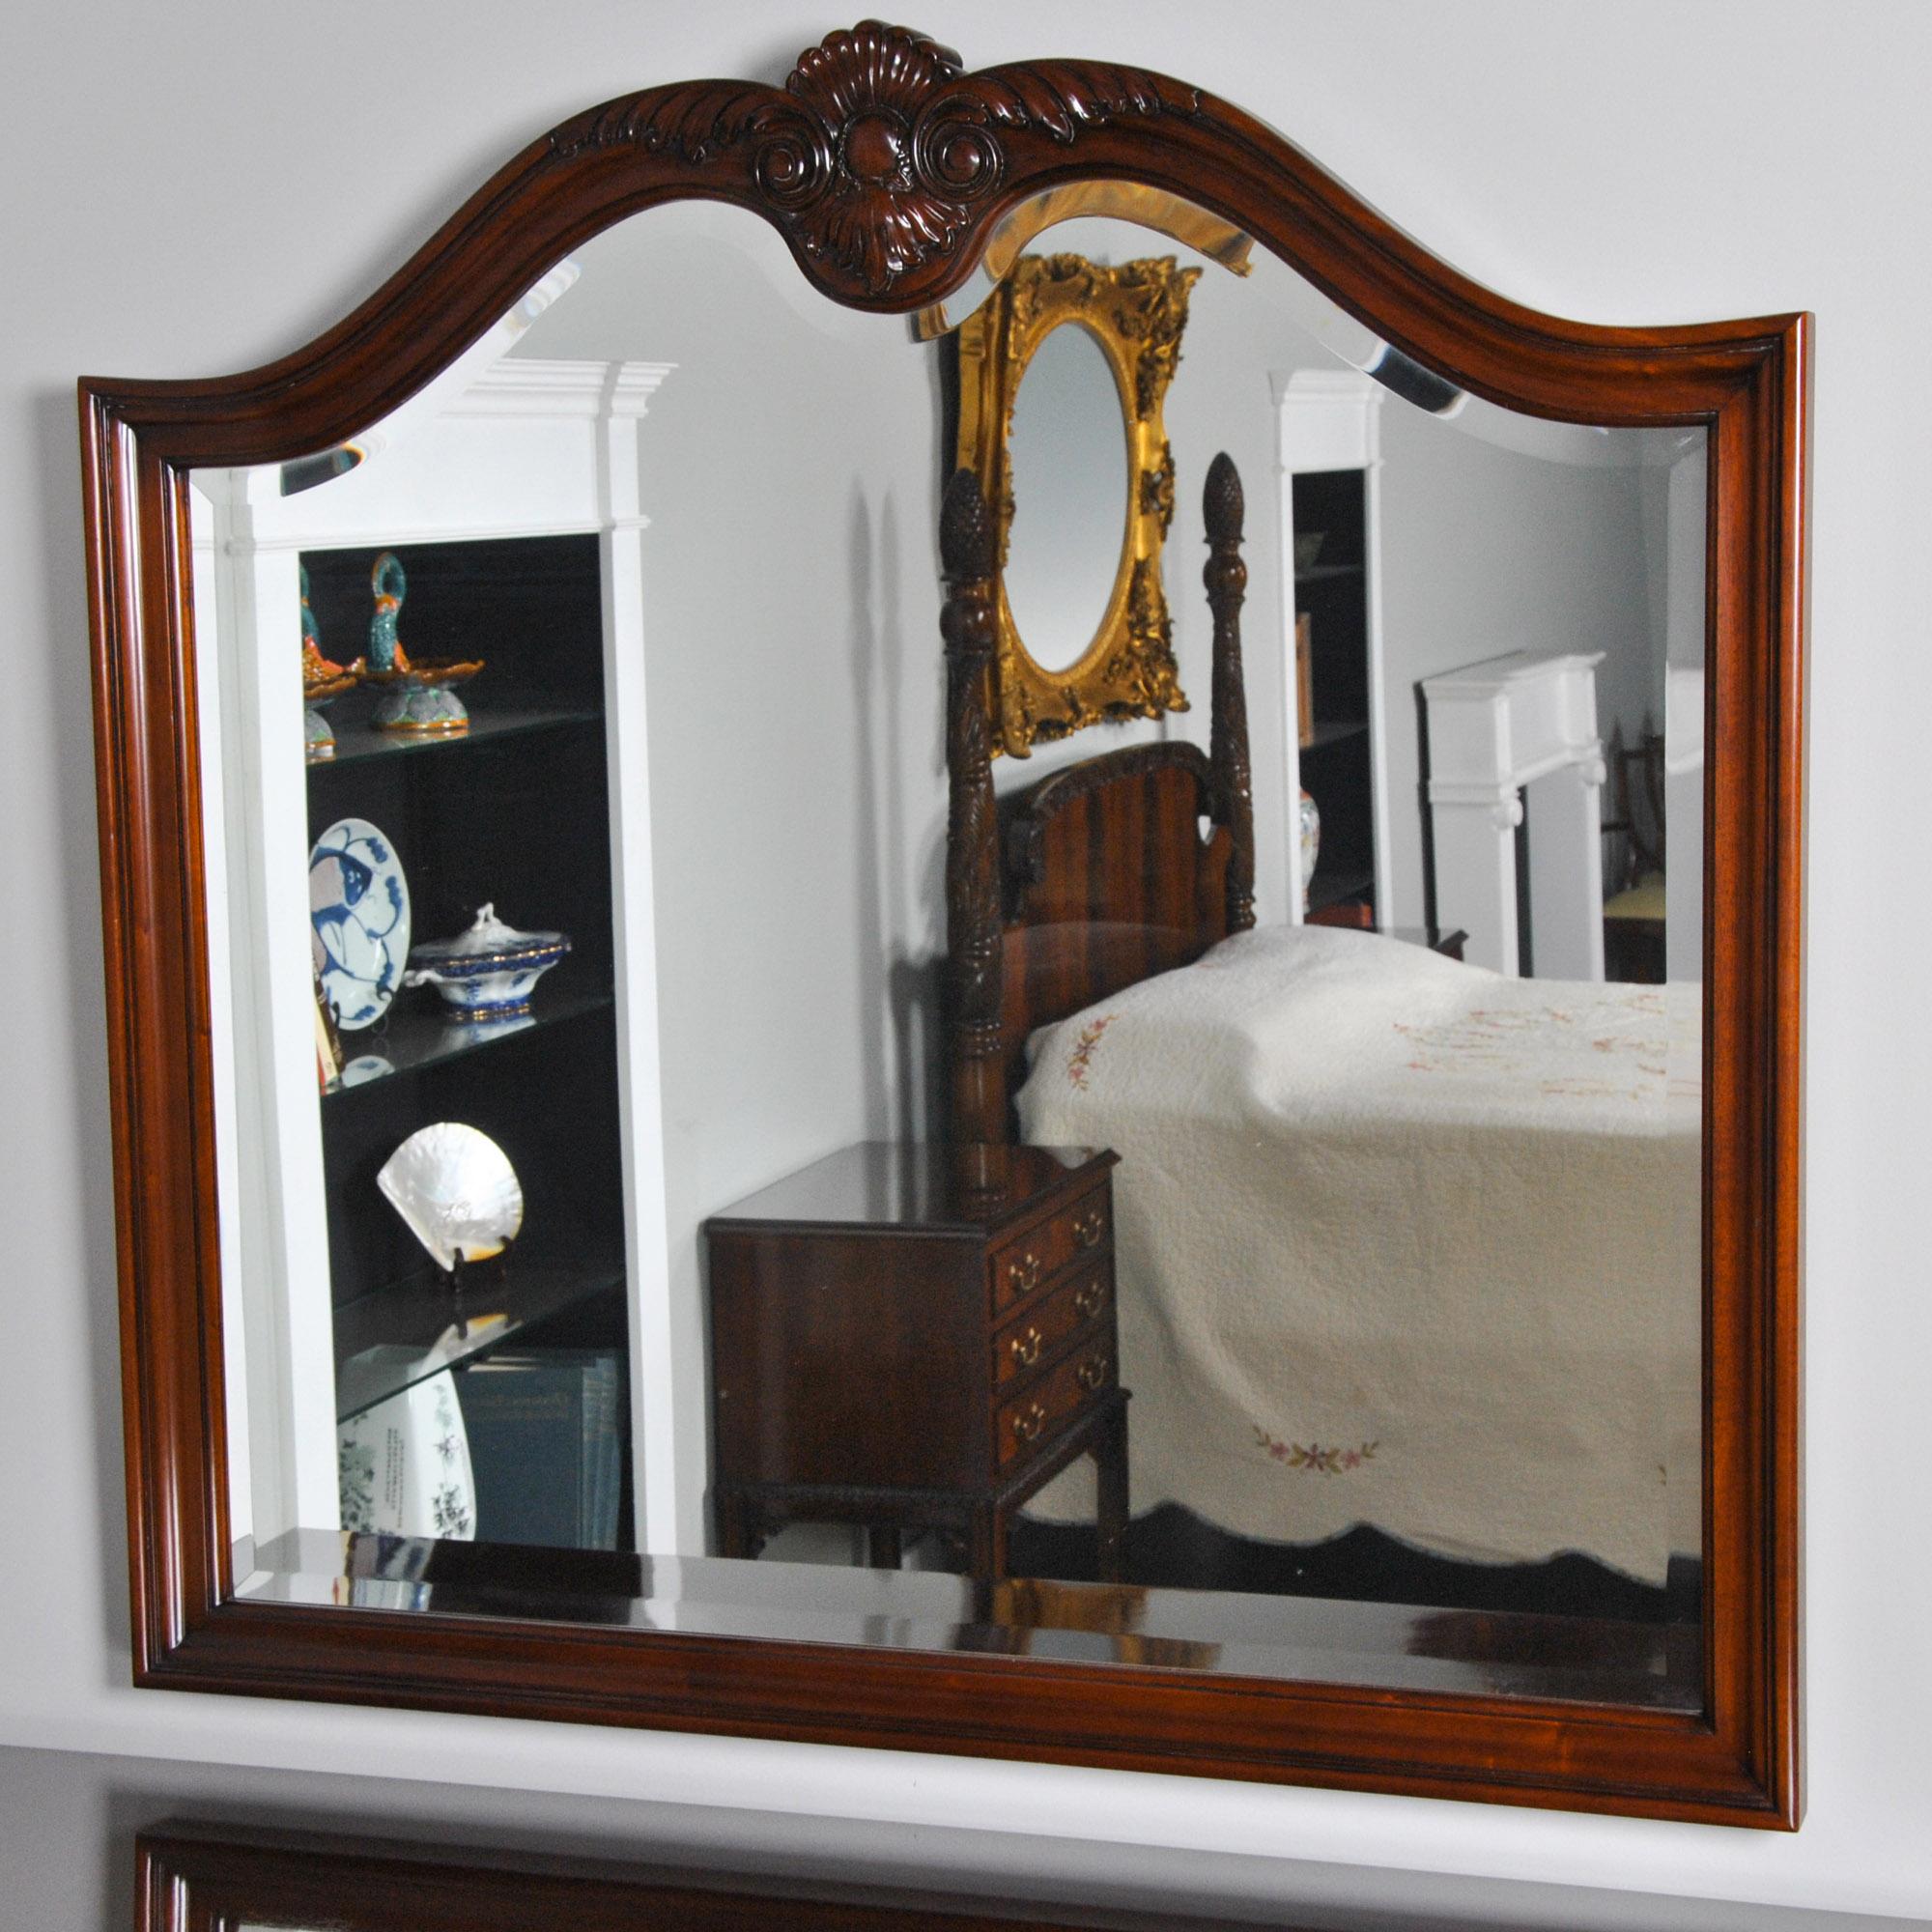 Le grand miroir en acajou présente un cadre en acajou massif avec une crête sculptée à la main. Cela permet de distinguer le miroir de ses équivalents produits en série que l'on trouve ailleurs. Un verre biseauté épais et de grande qualité est